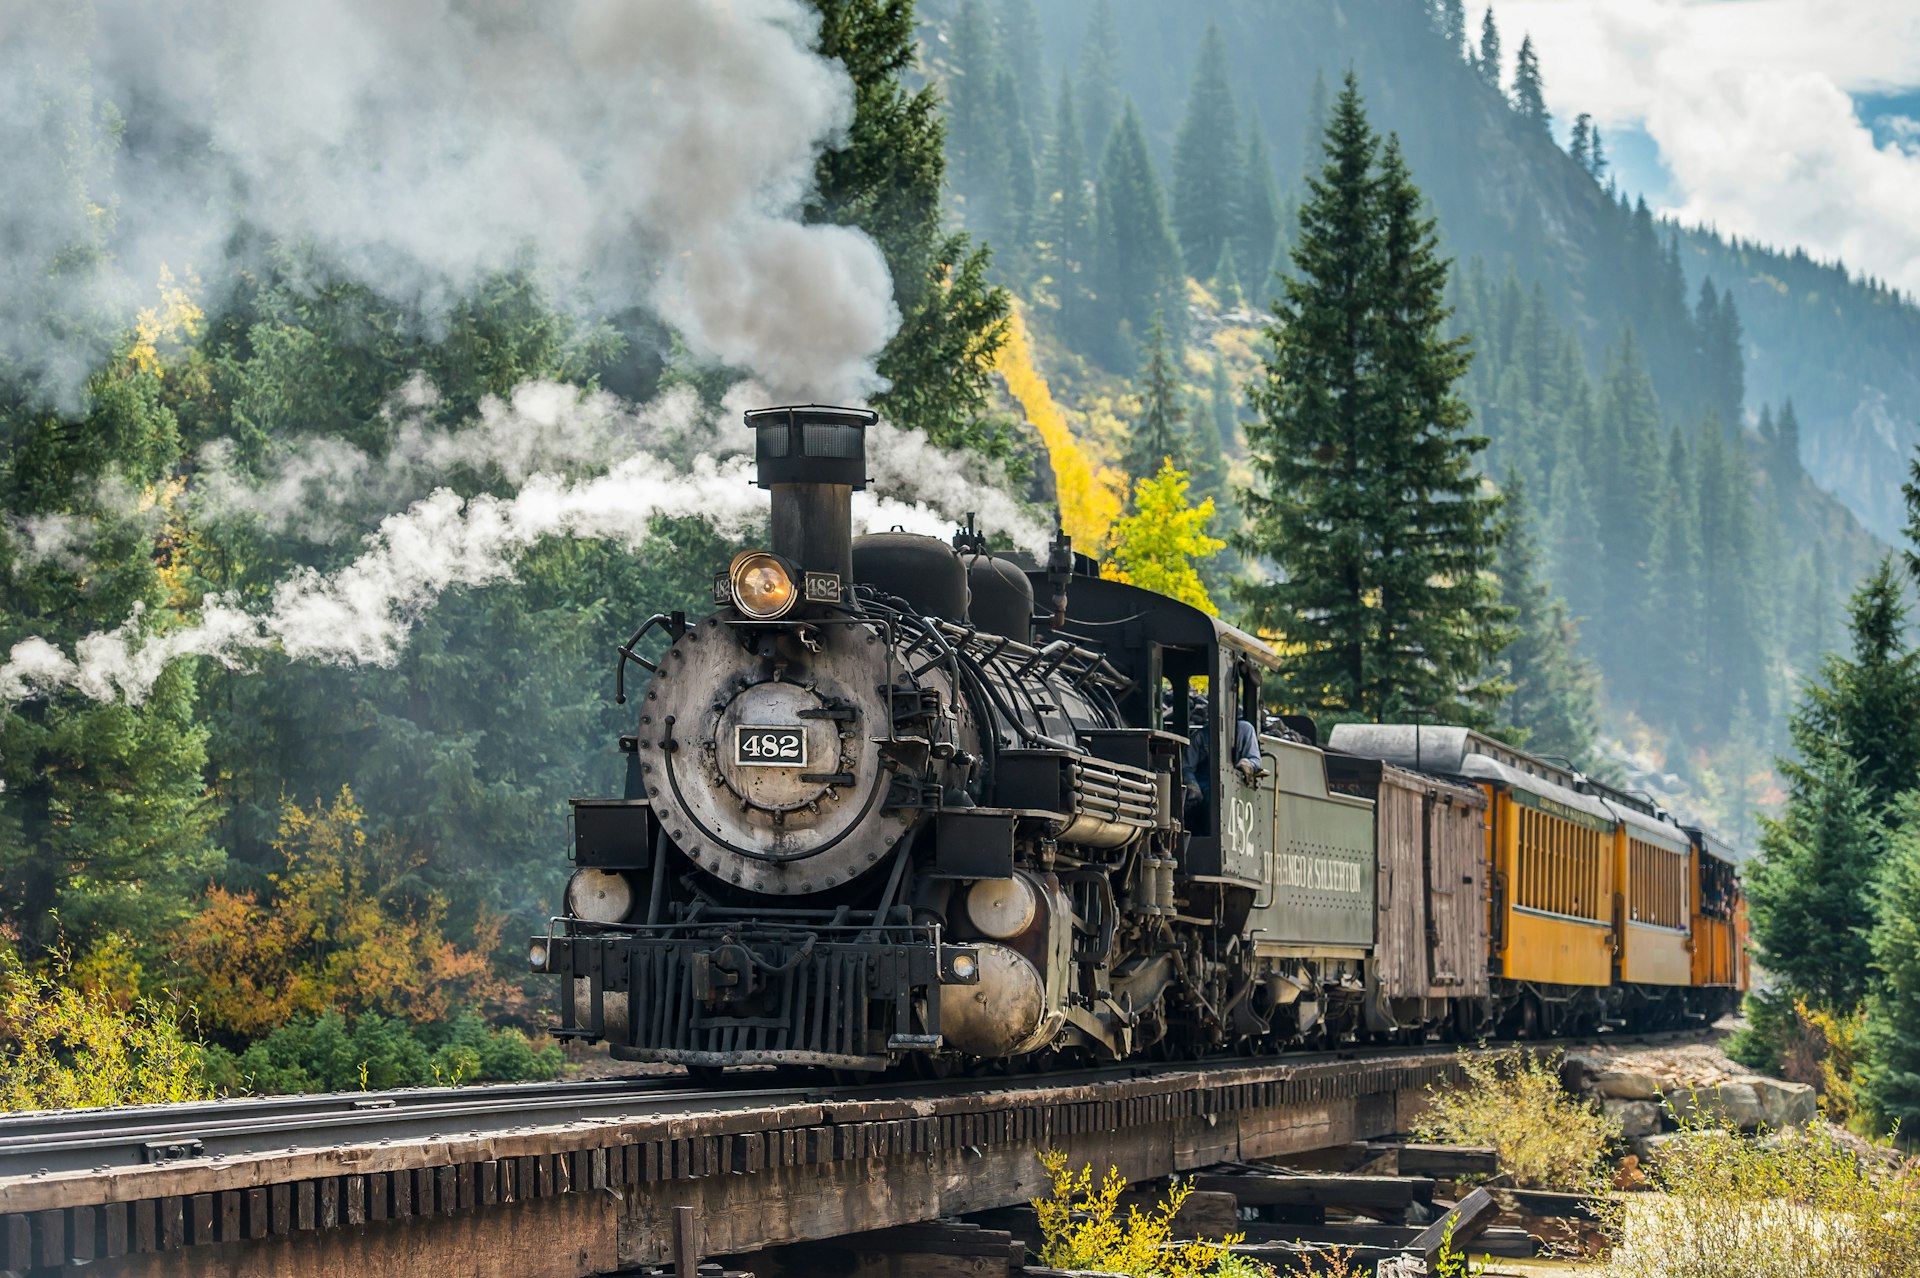 A steam train follows a scenic rural route